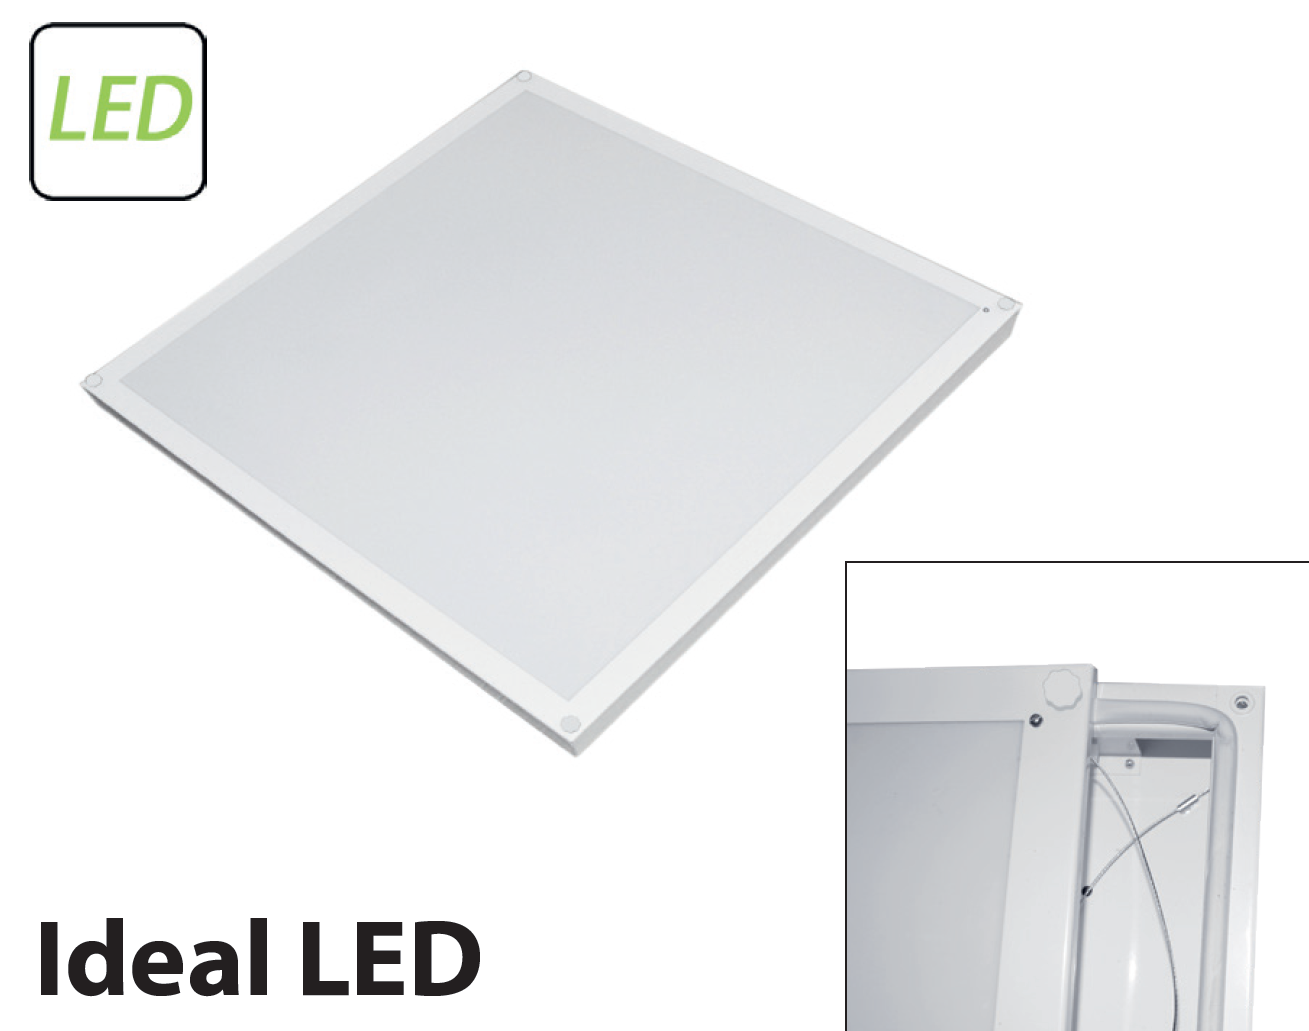        Ideal LED-01 () 0261818193-53 